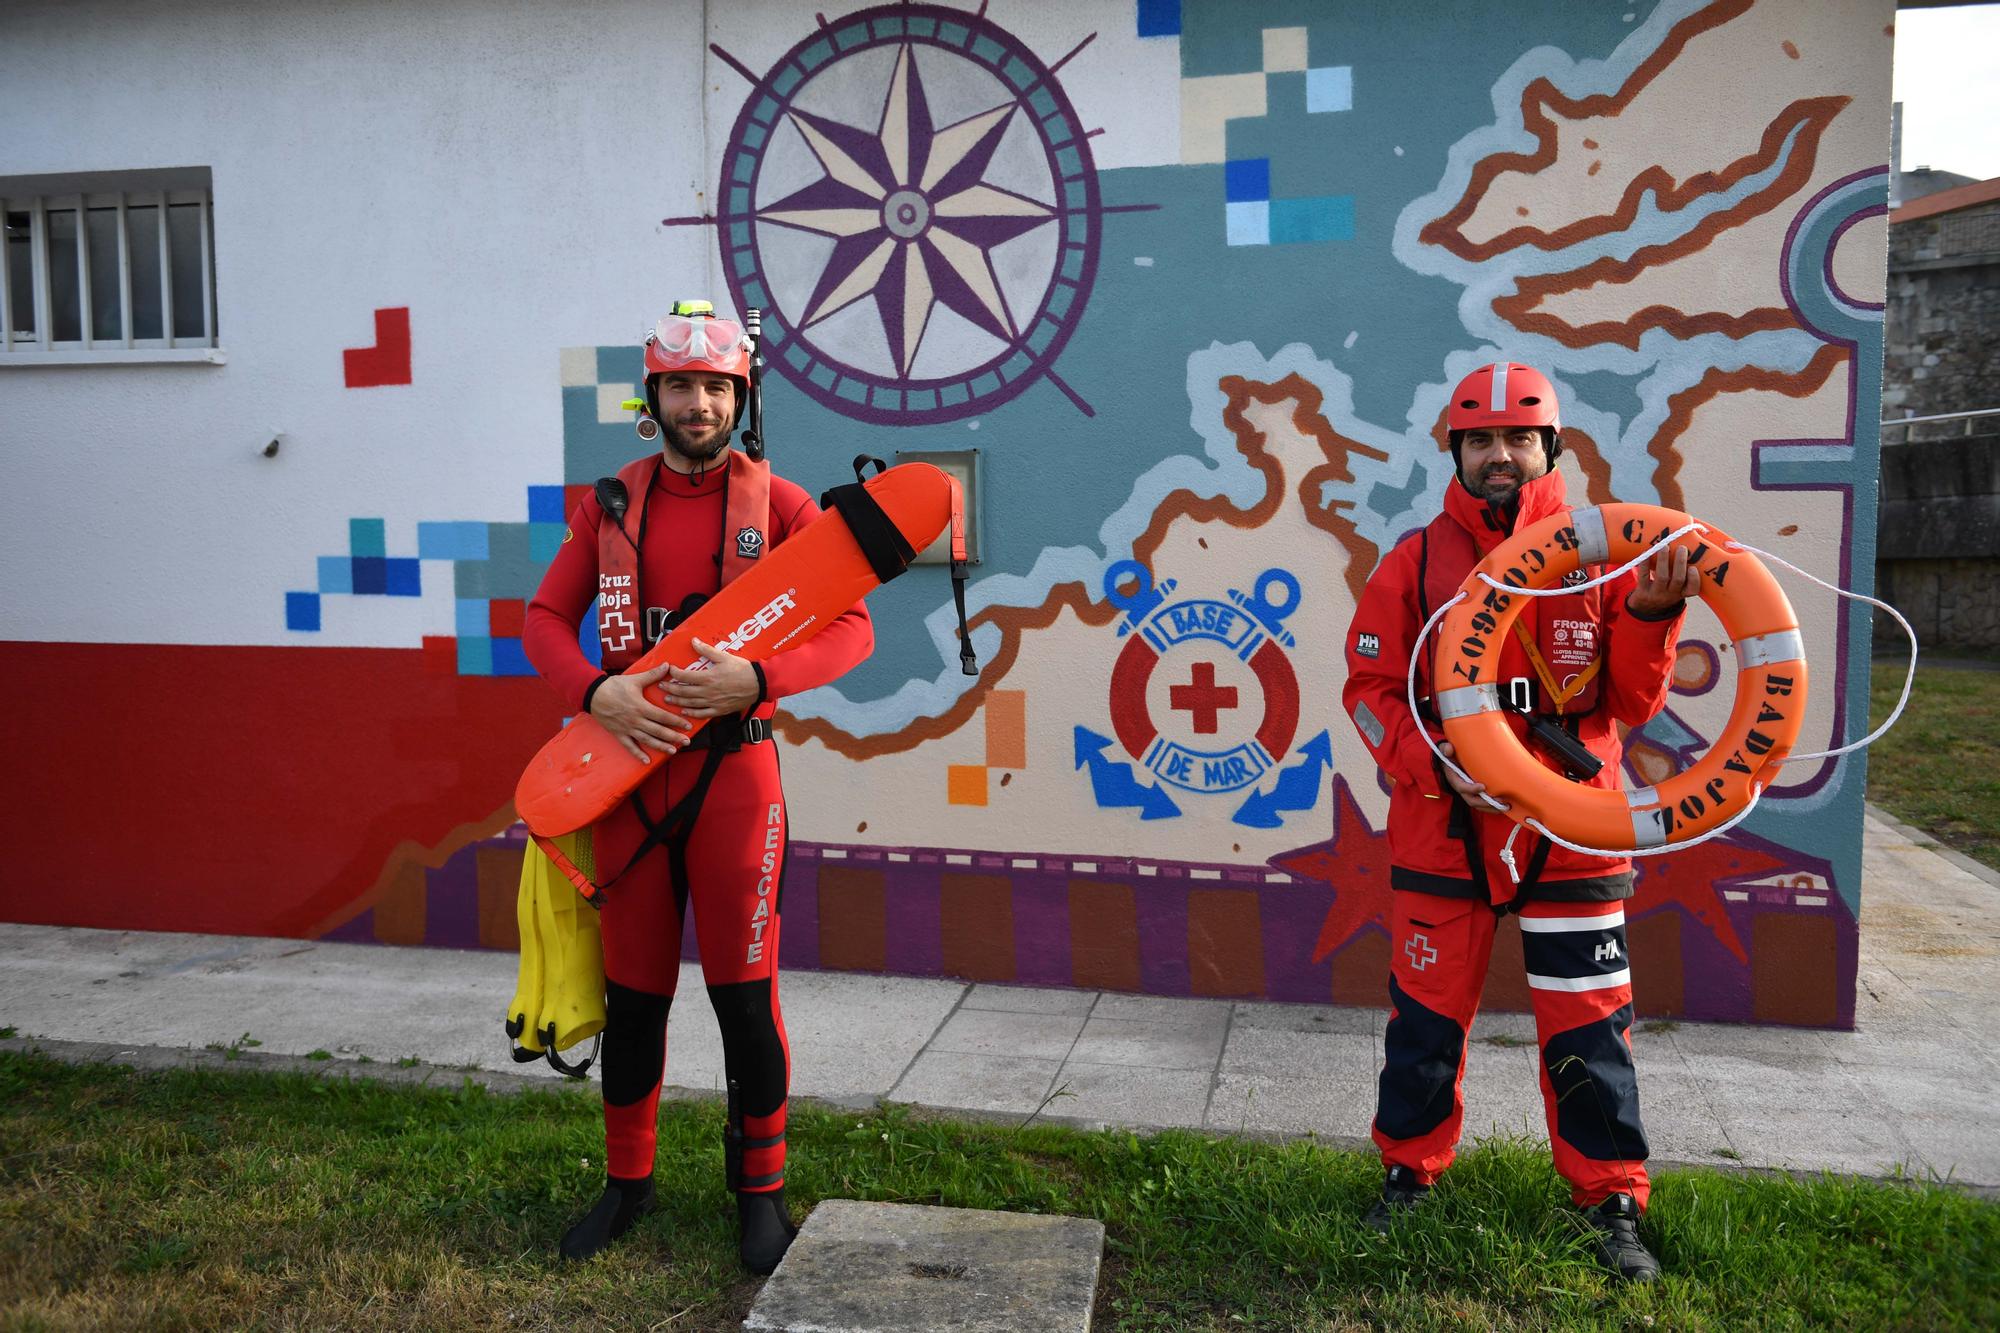 Un mural para el servicio de Salvamento Marítimo de Cruz Roja en A Coruña